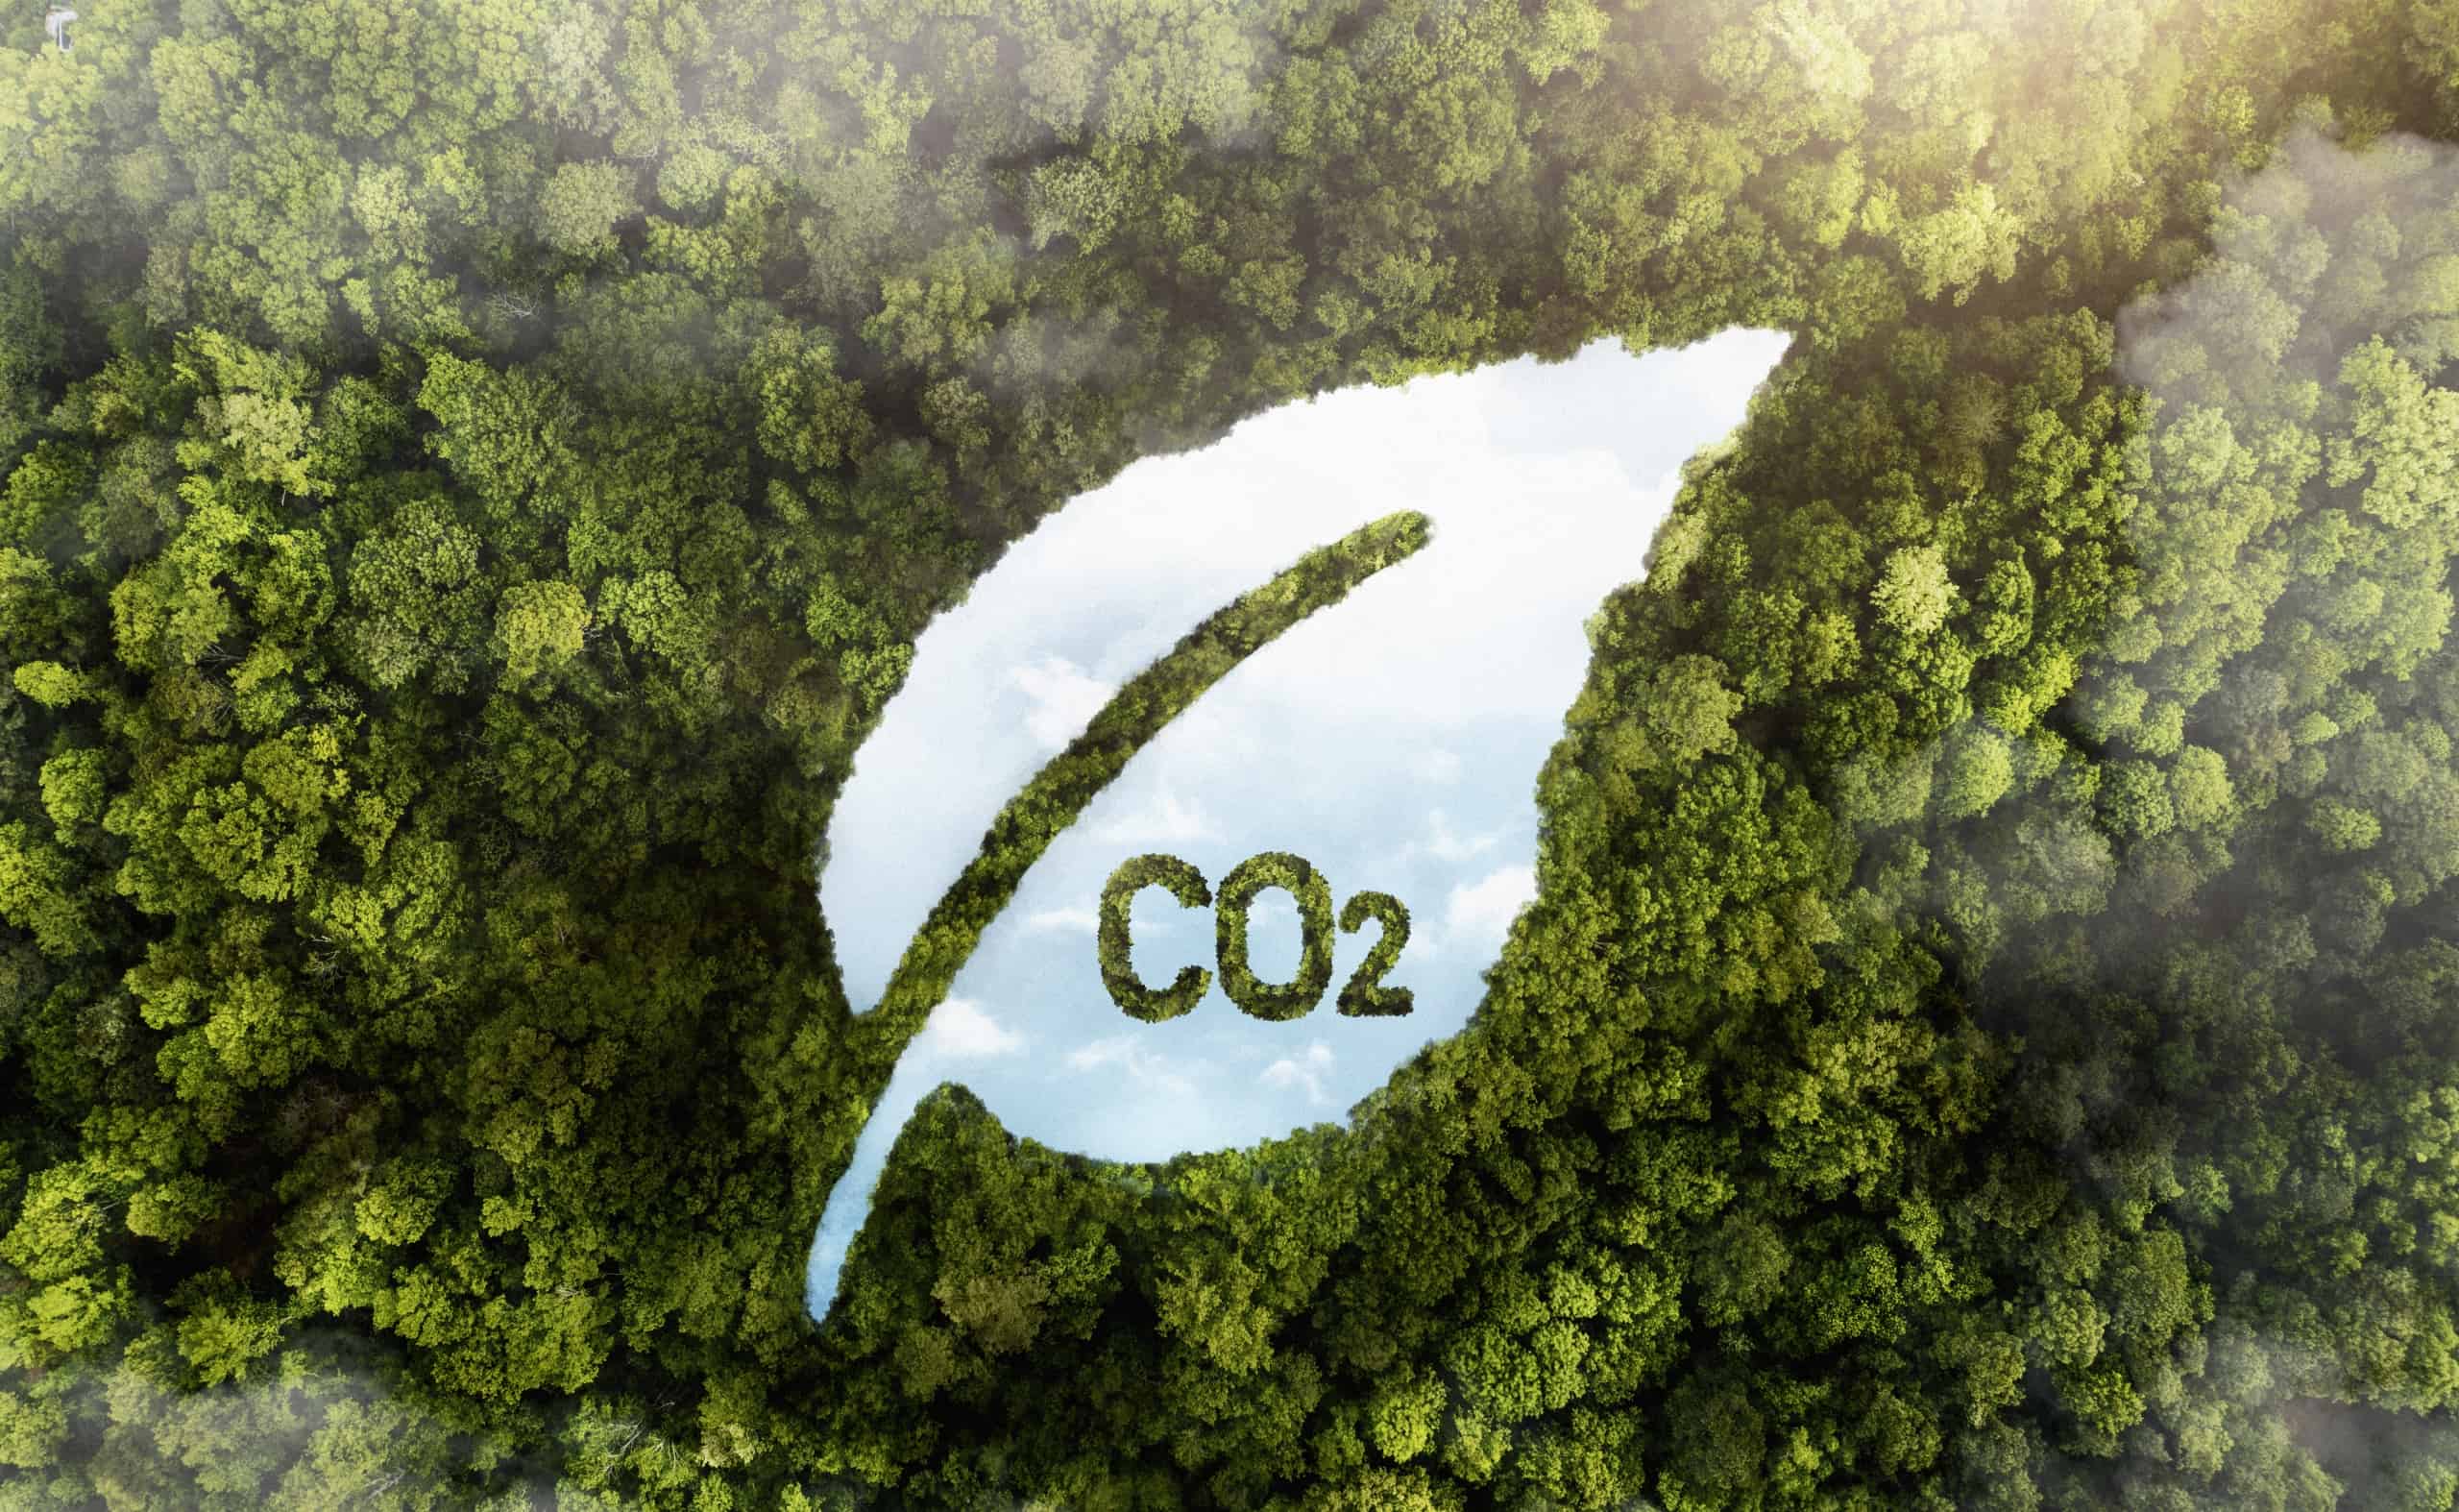 شاهد أشجار الغابات الخضراء مع تحجيم ثاني أكسيد الكربون - الاستثمار في البحث والتطوير لتكنولوجيا آلات المناديل المبللة